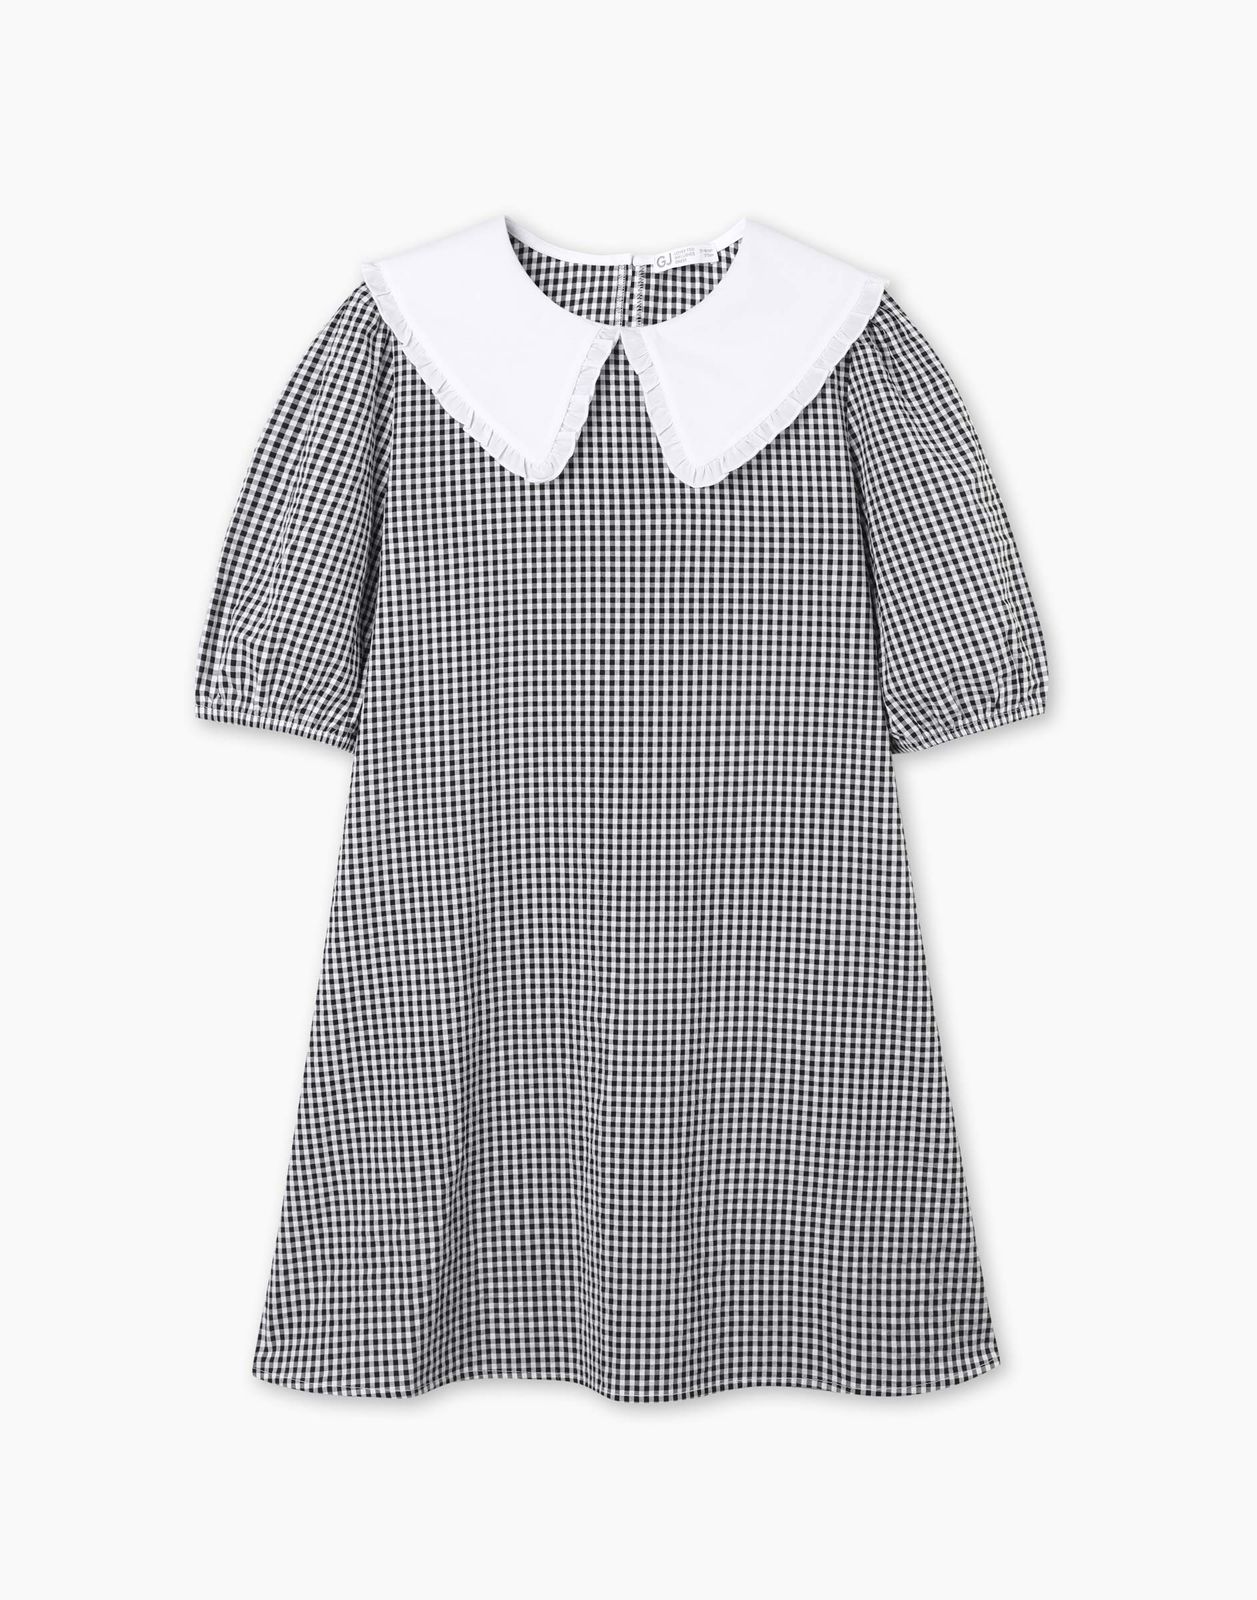 Платье детское Gloria Jeans GDR028214, белый/черный, 134